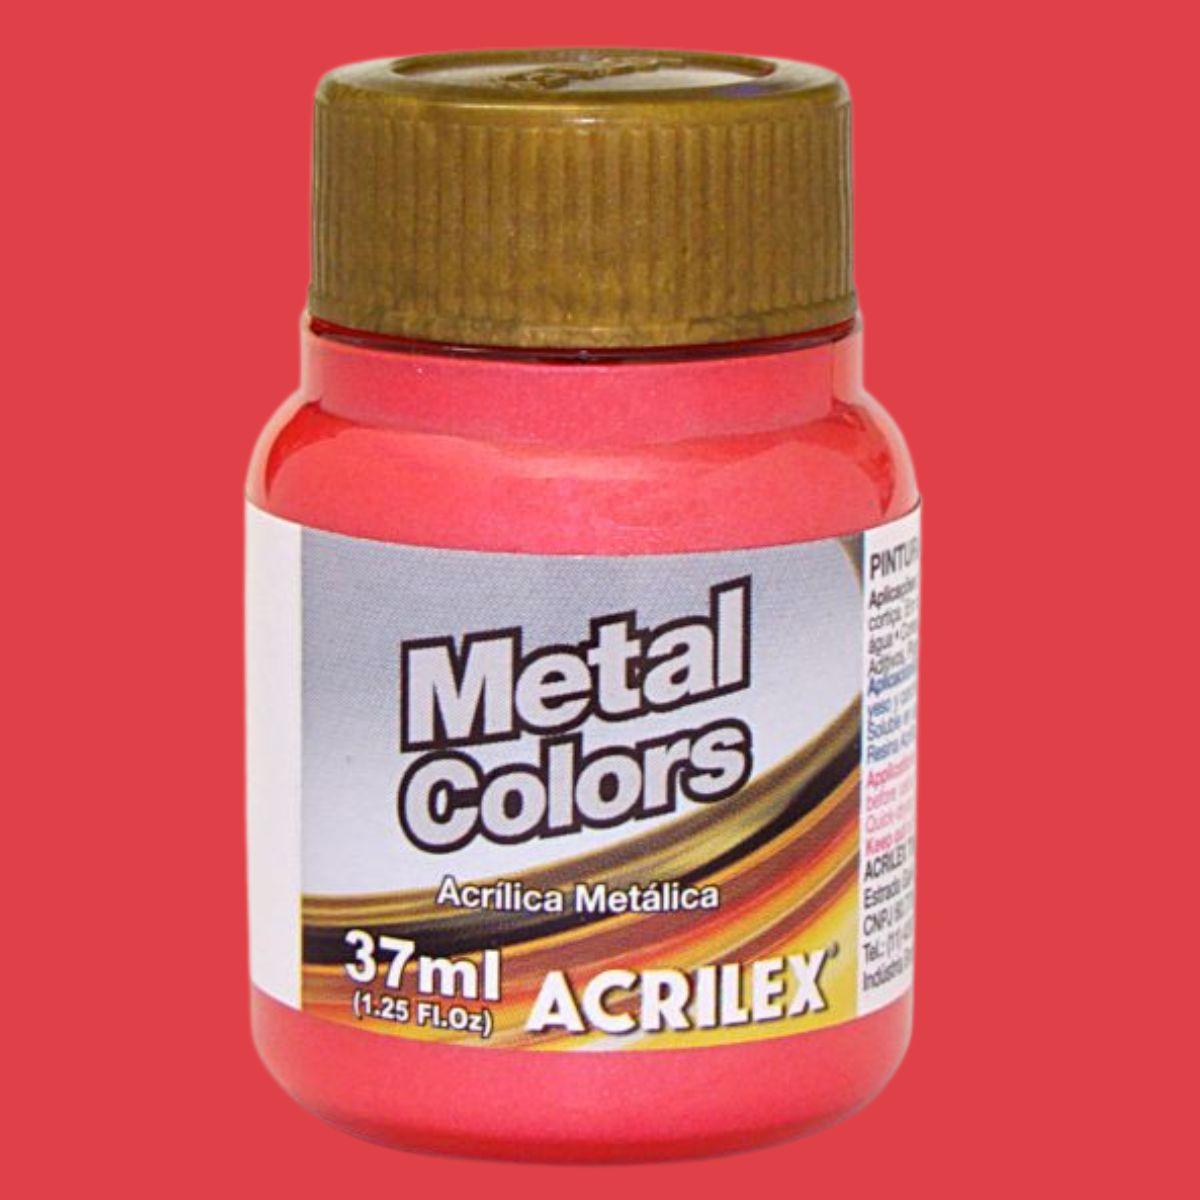 Tinta Acrílica Metálica Acrilex 37ml Metal Colors - Palácio da Arte